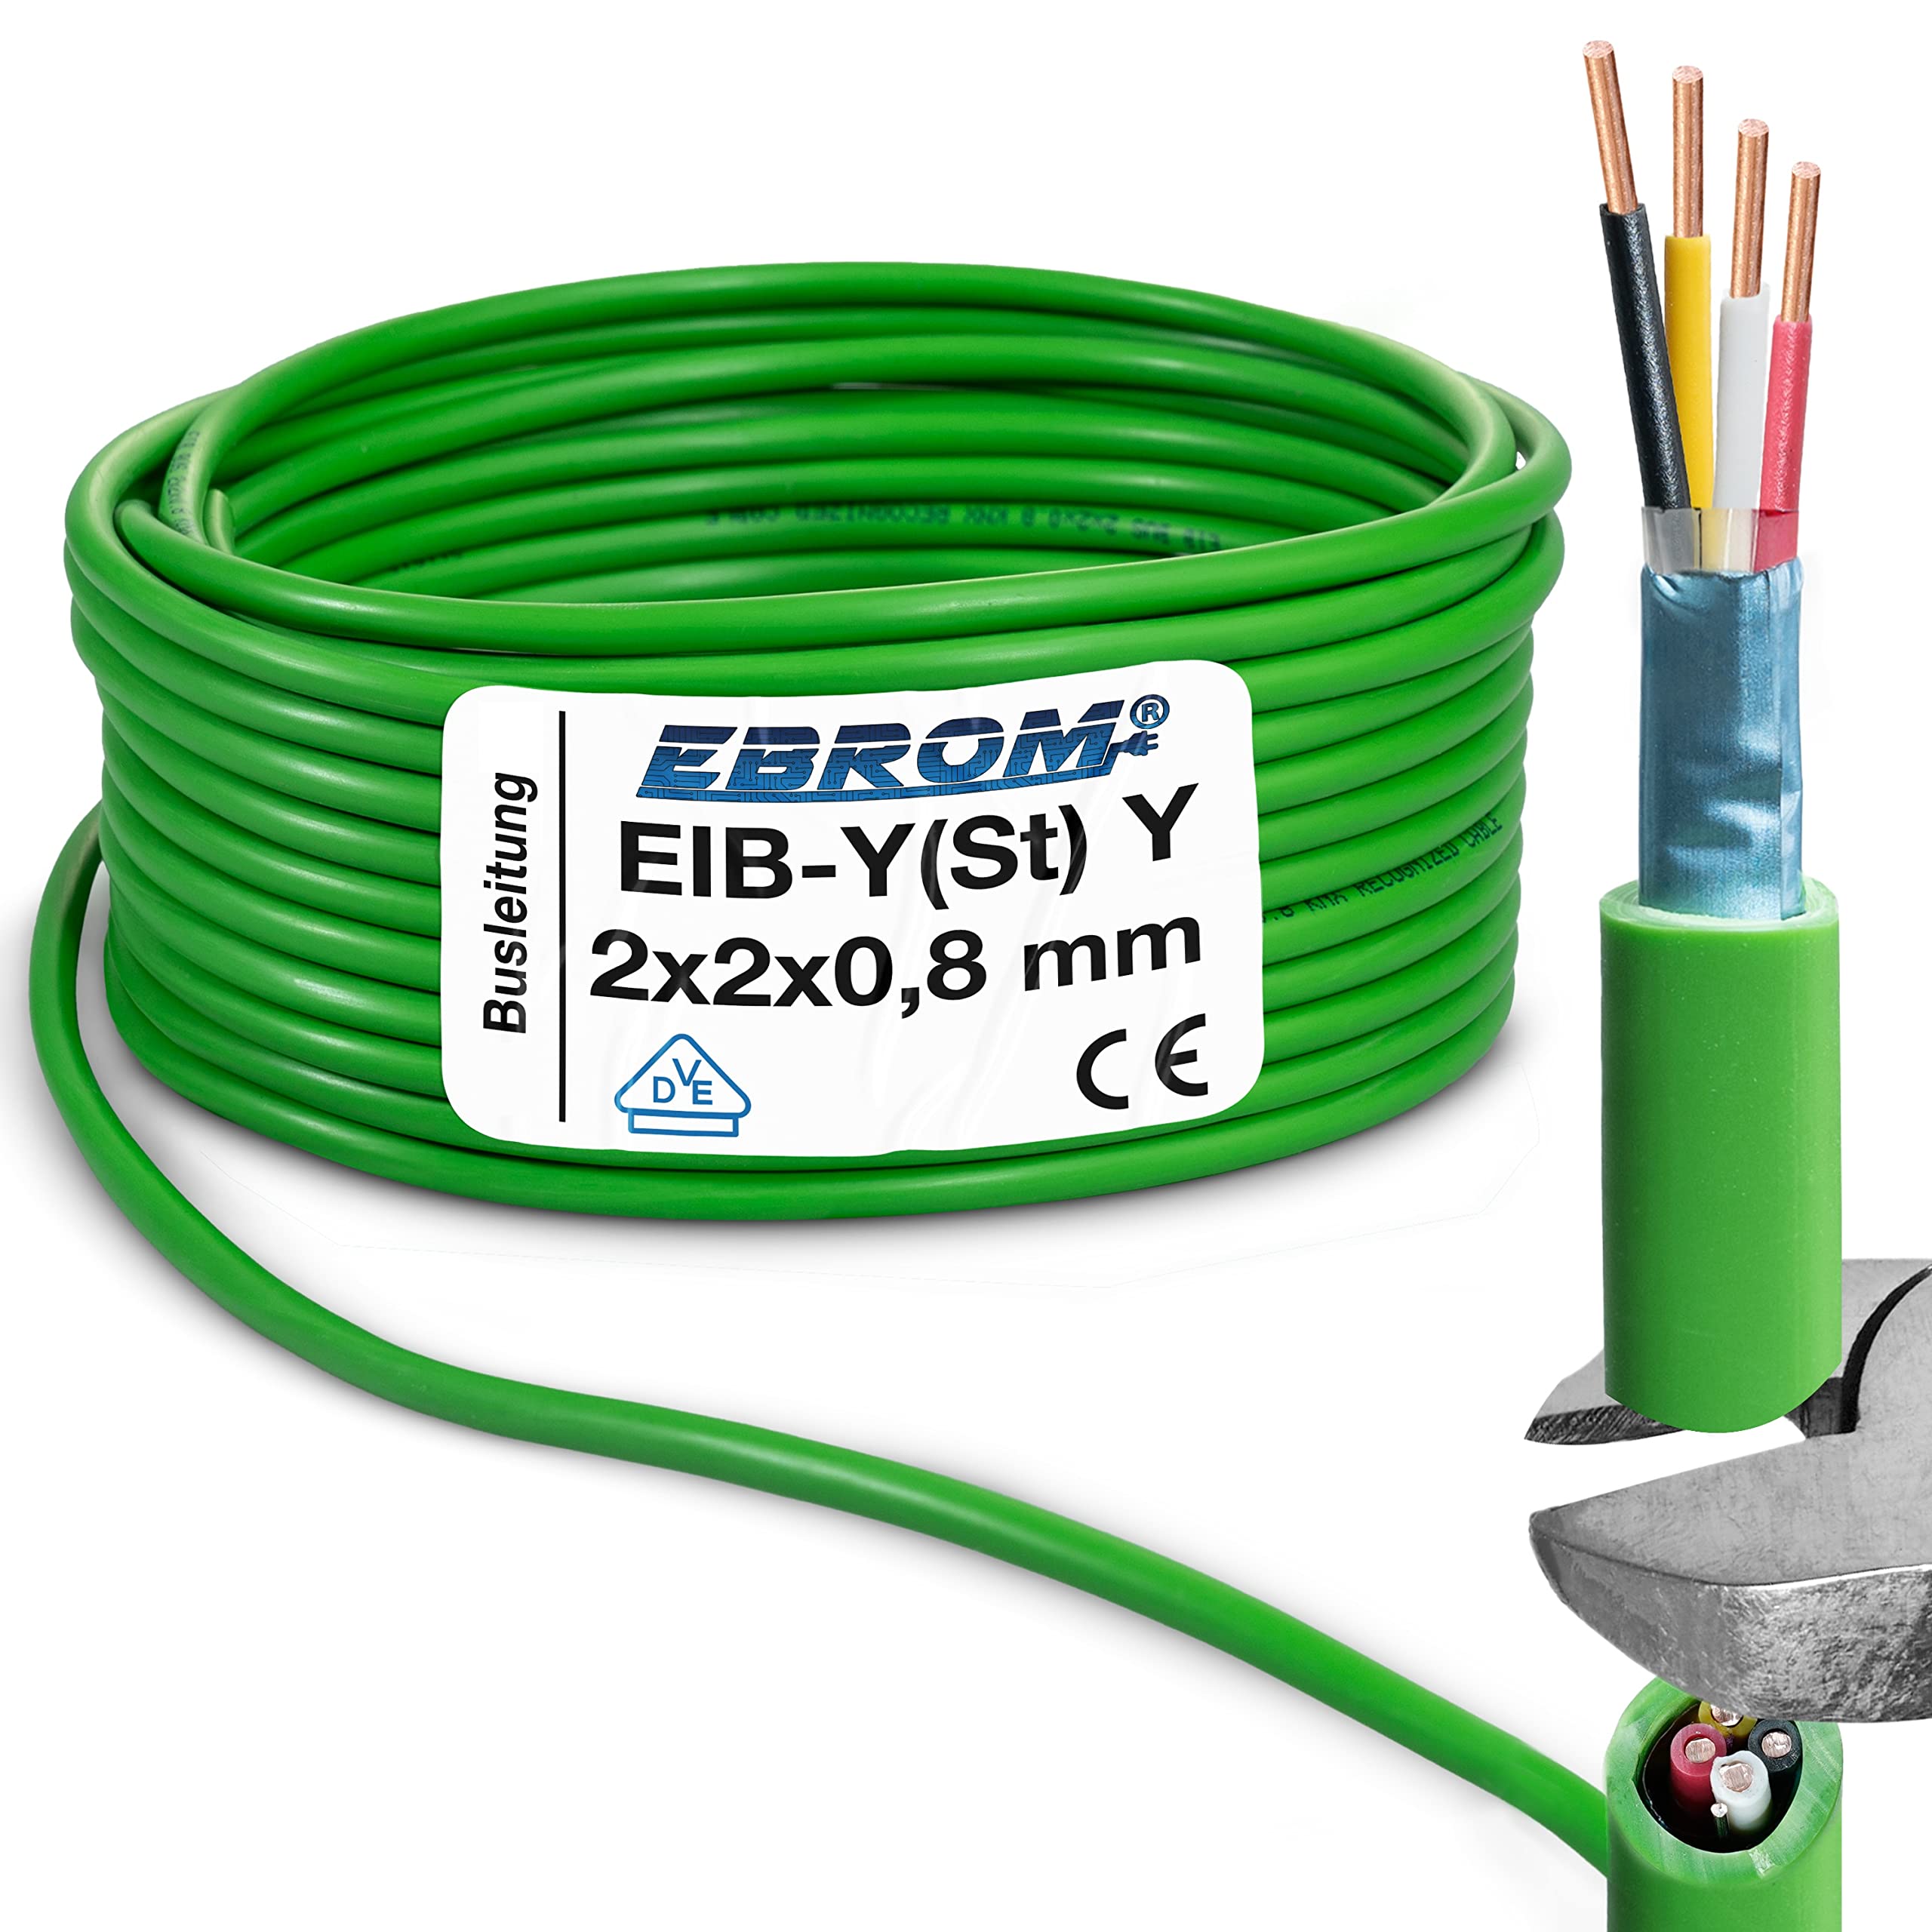 EIB Busleitung Kabel - EIB-Y(St)Y 2x2x0,8 mm grün Datenleitung Datenkabel Installationsbusleitung Telekommunikationskabel - viele Längen - von 5 Meter bis 100 Meter – Ihre ausgewählte Länge: 40 Meter